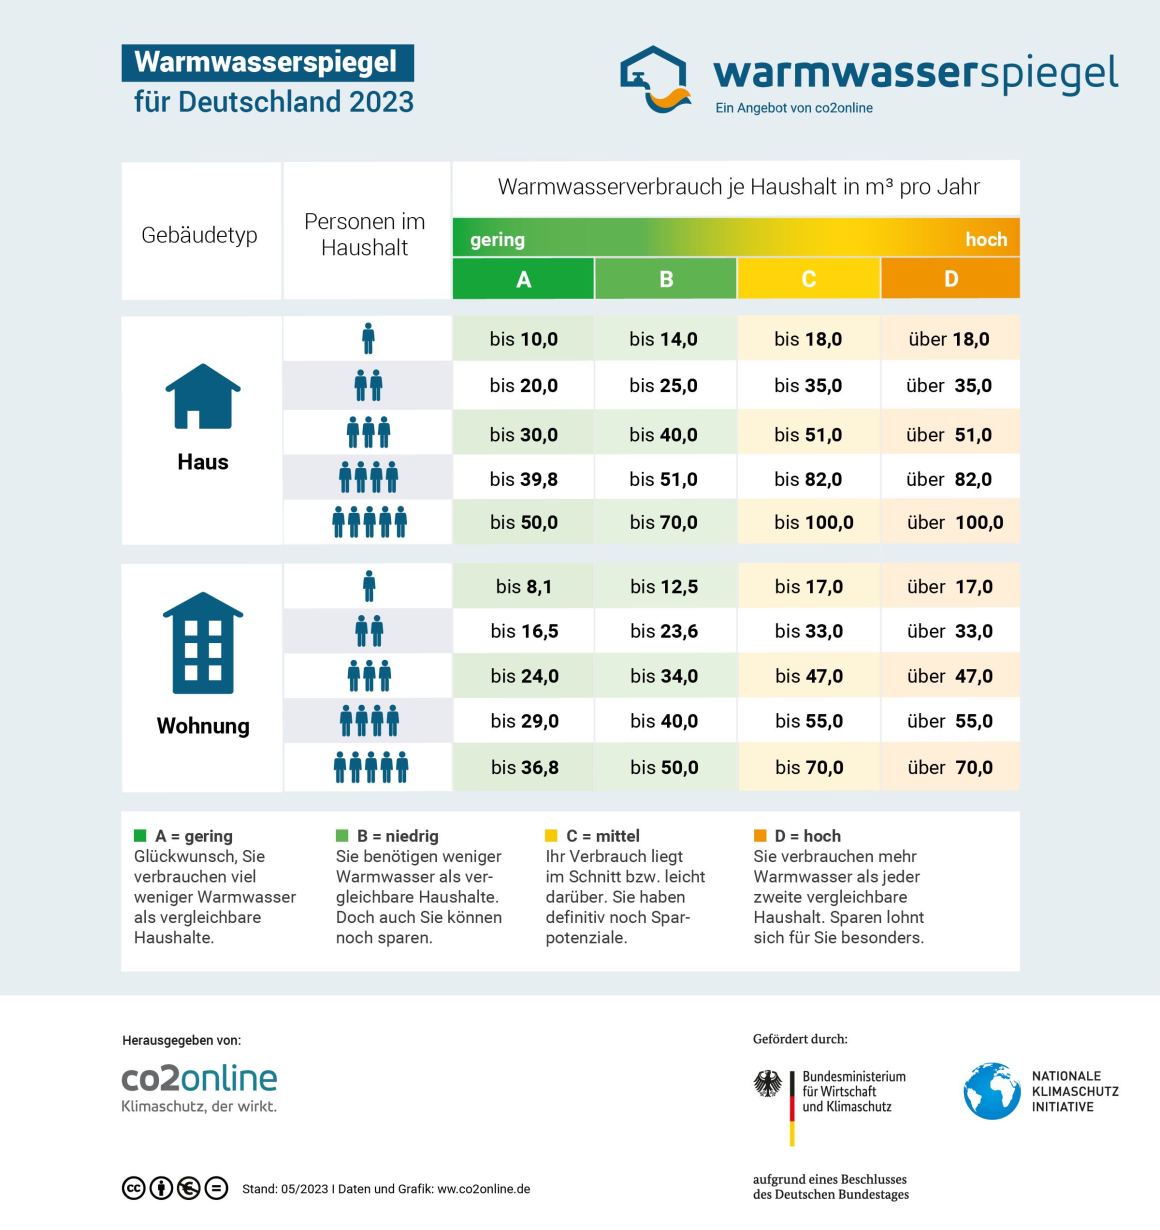 Grafik zum Warmwasserspiegel 2023, gegliedert nach Gebäudetyp, Personen im Haushalt und Warmwasserverbrauch je Haushalt.